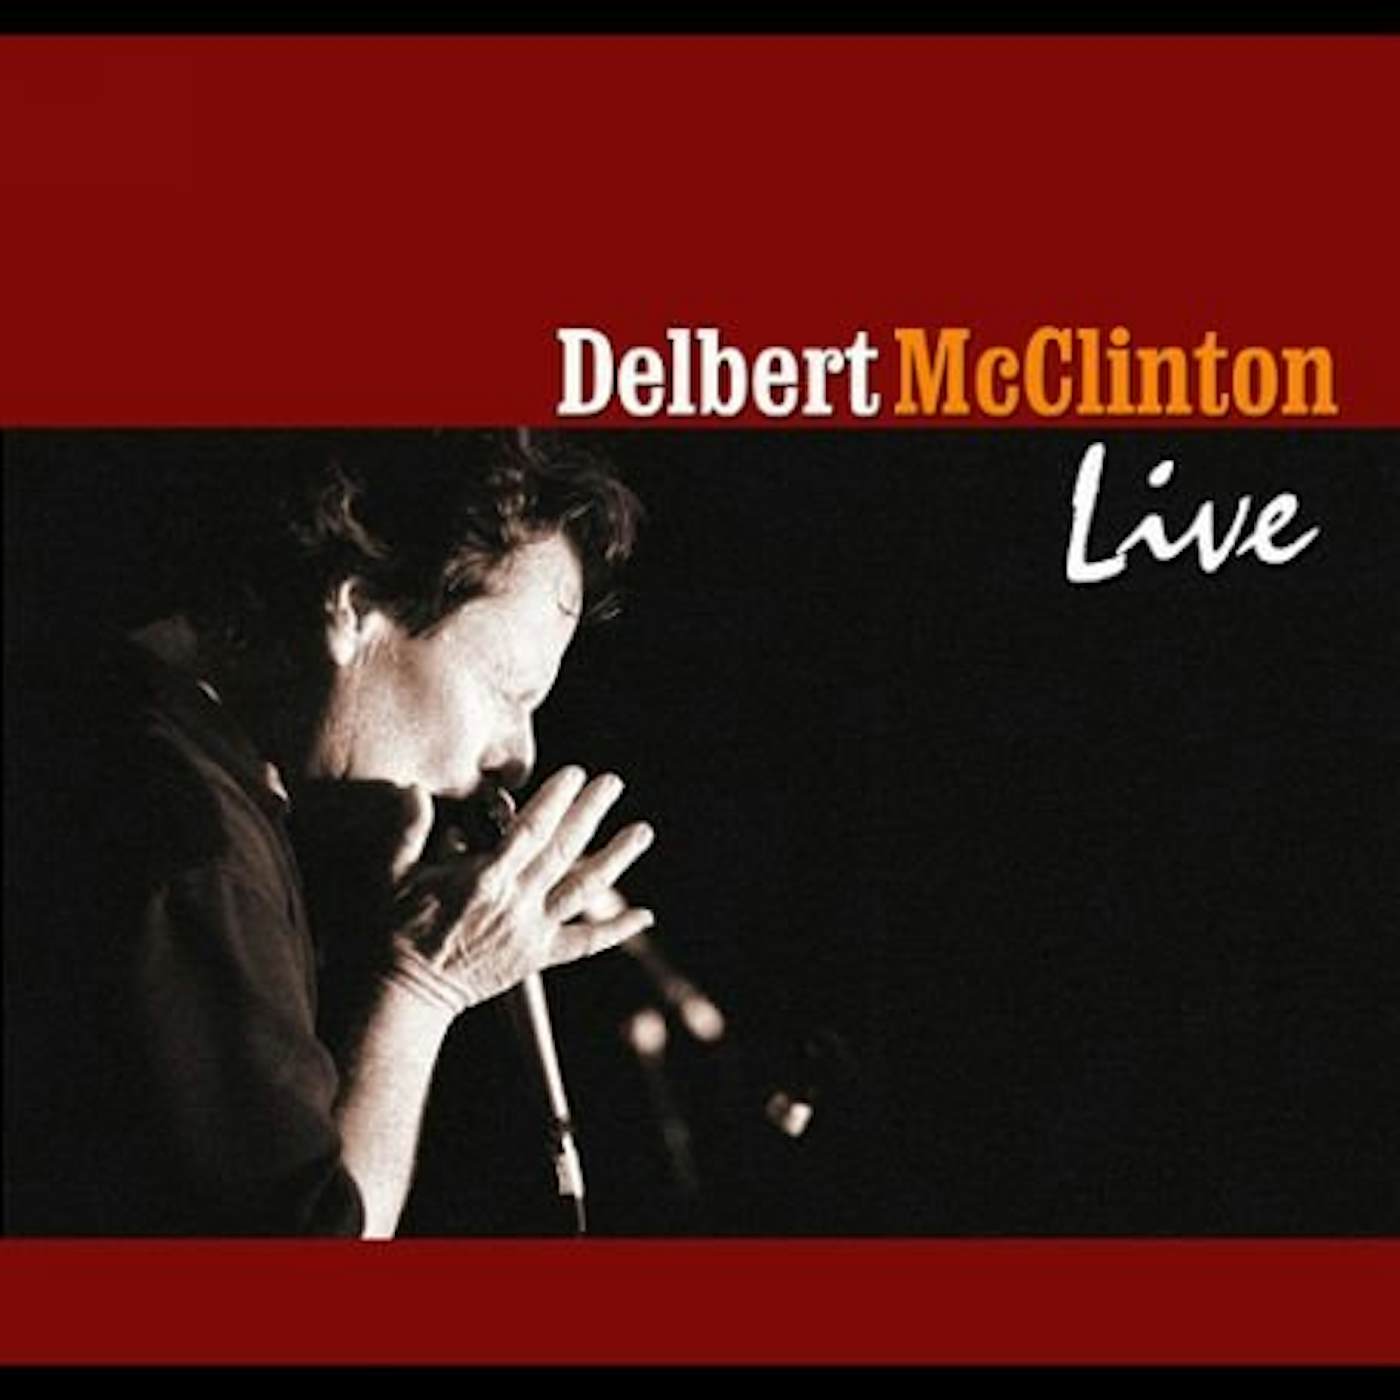 Delbert McClinton Live Vinyl Record